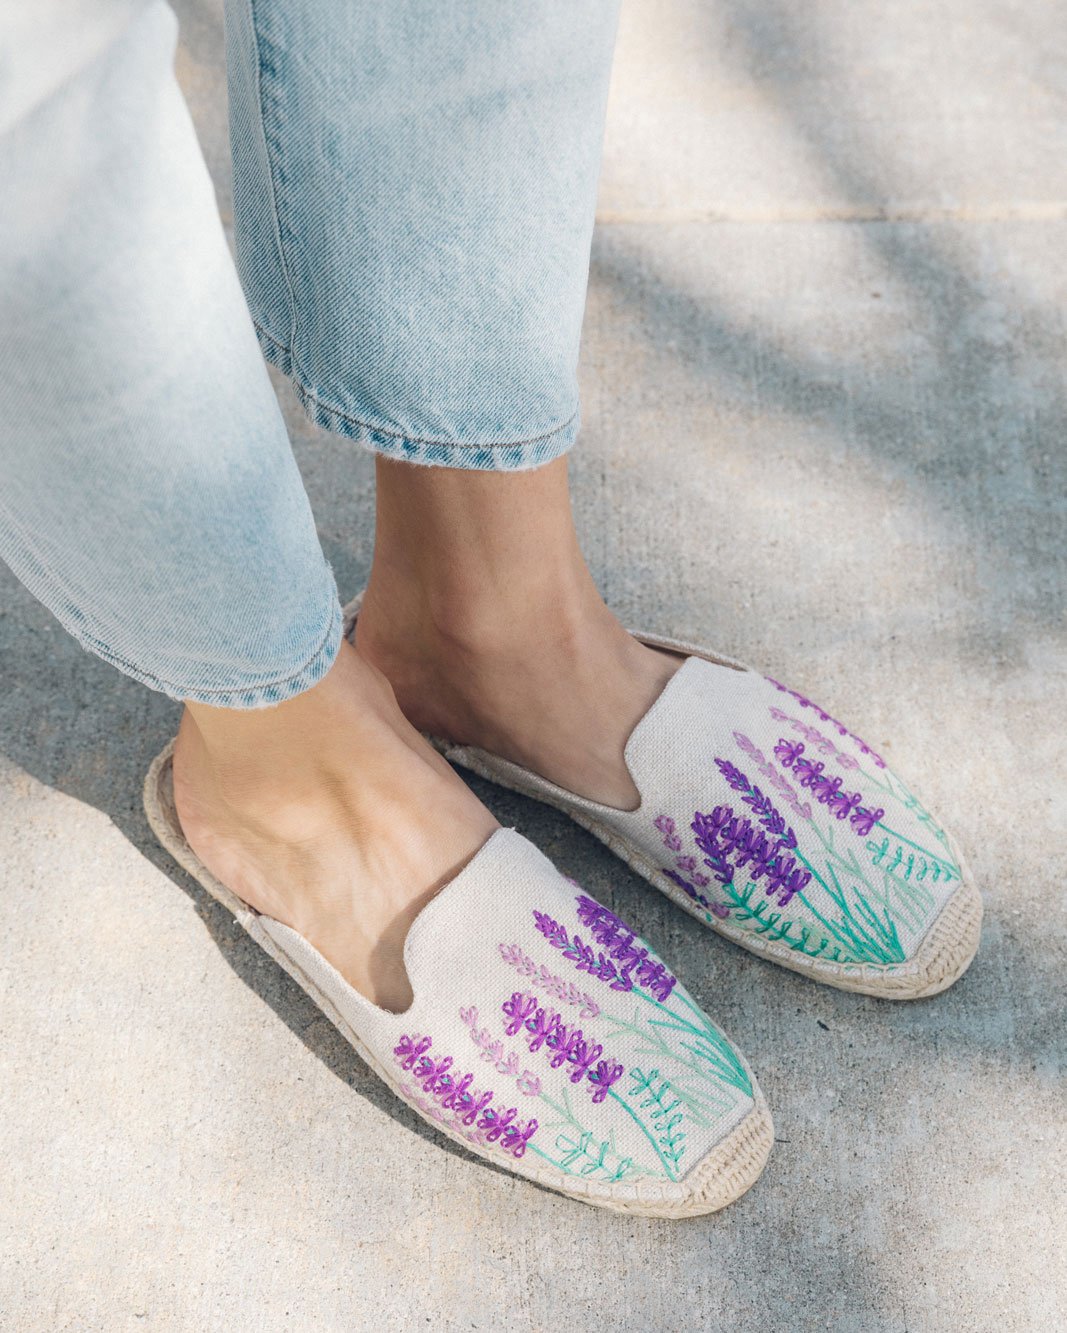 lavender mules shoes